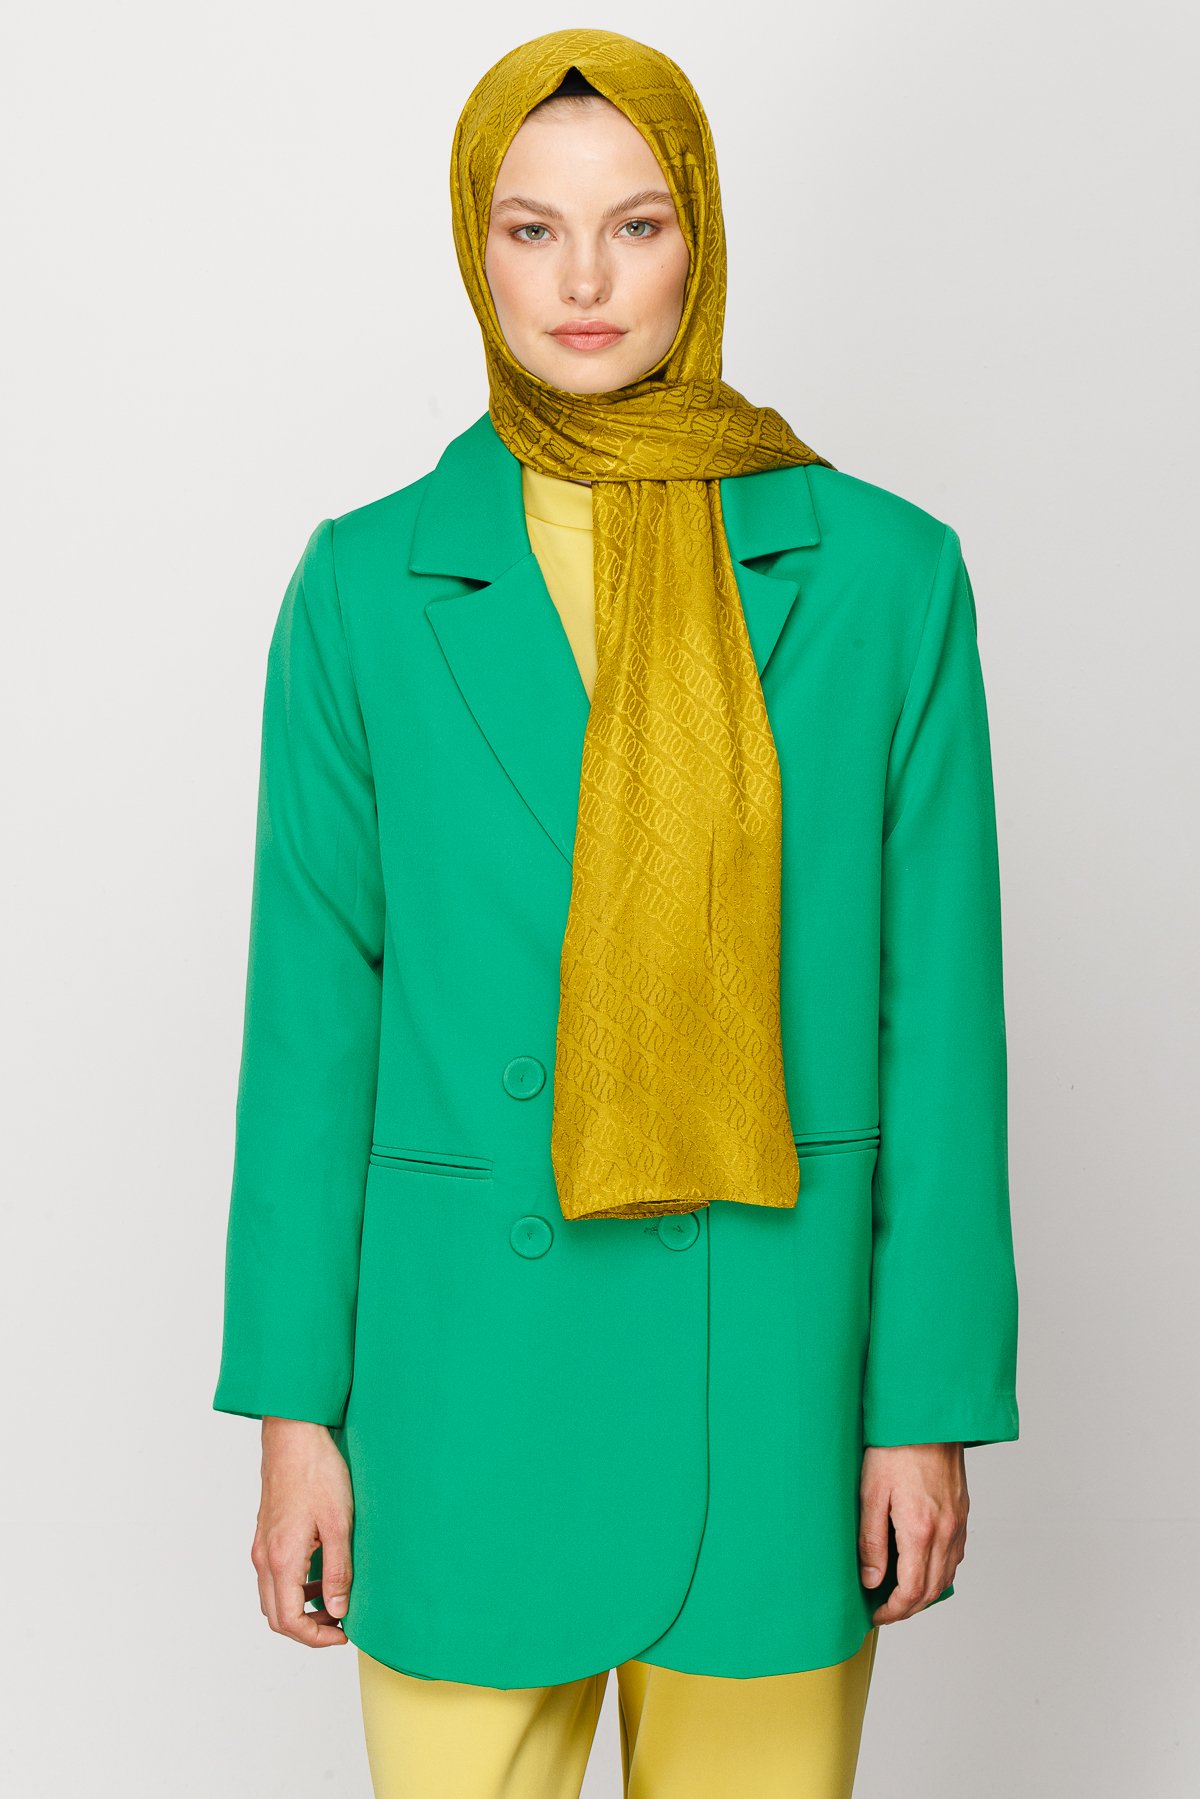 Forever Pattern Shiny Jacquard Hijab